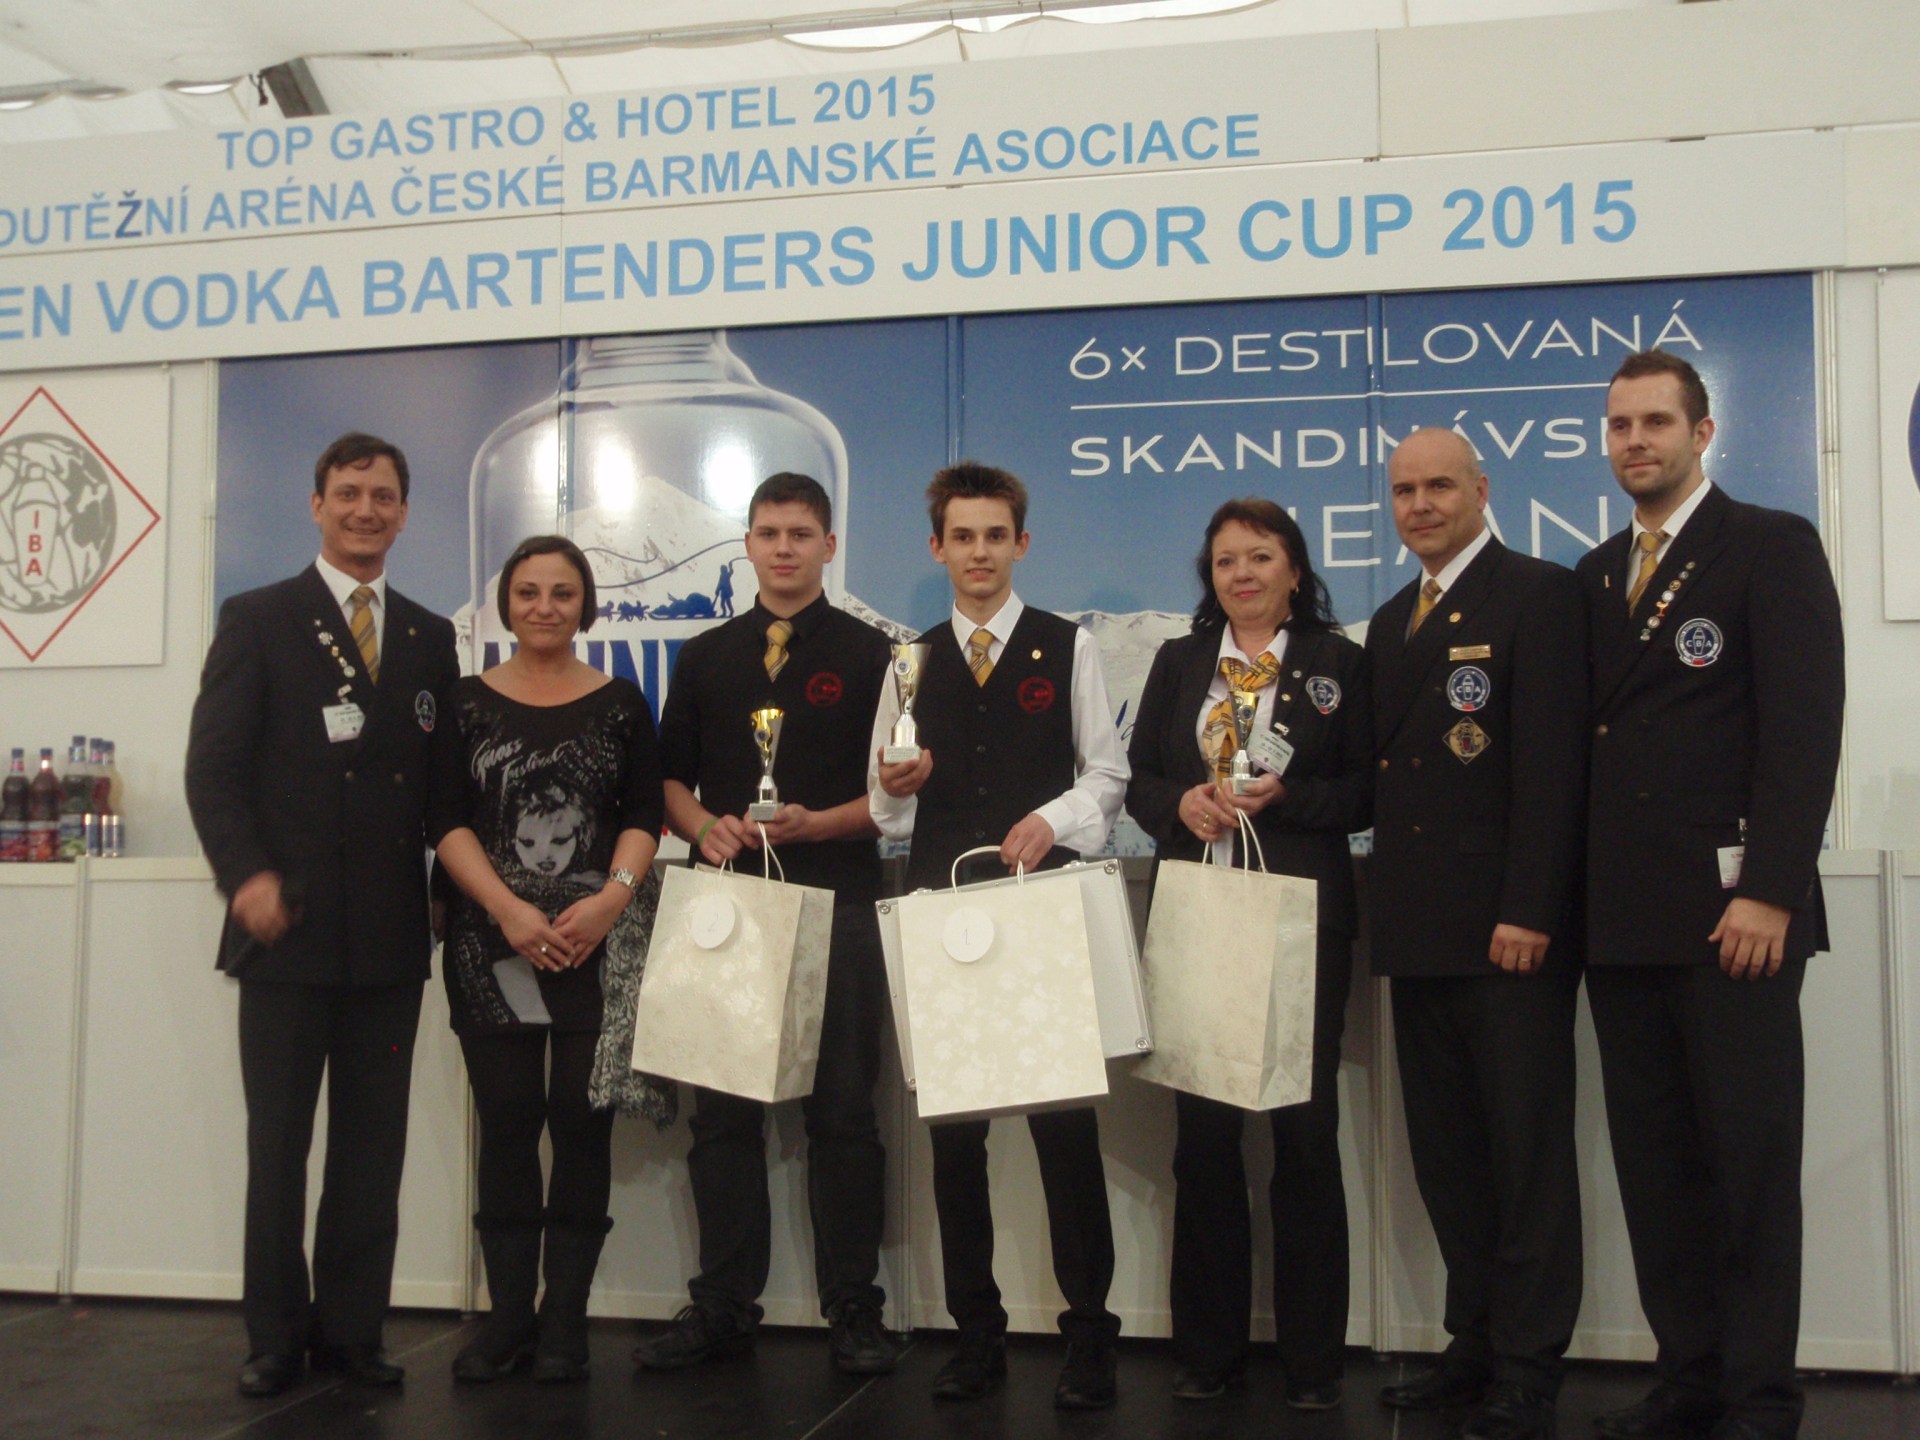 Bartenders Junior Cup 2015